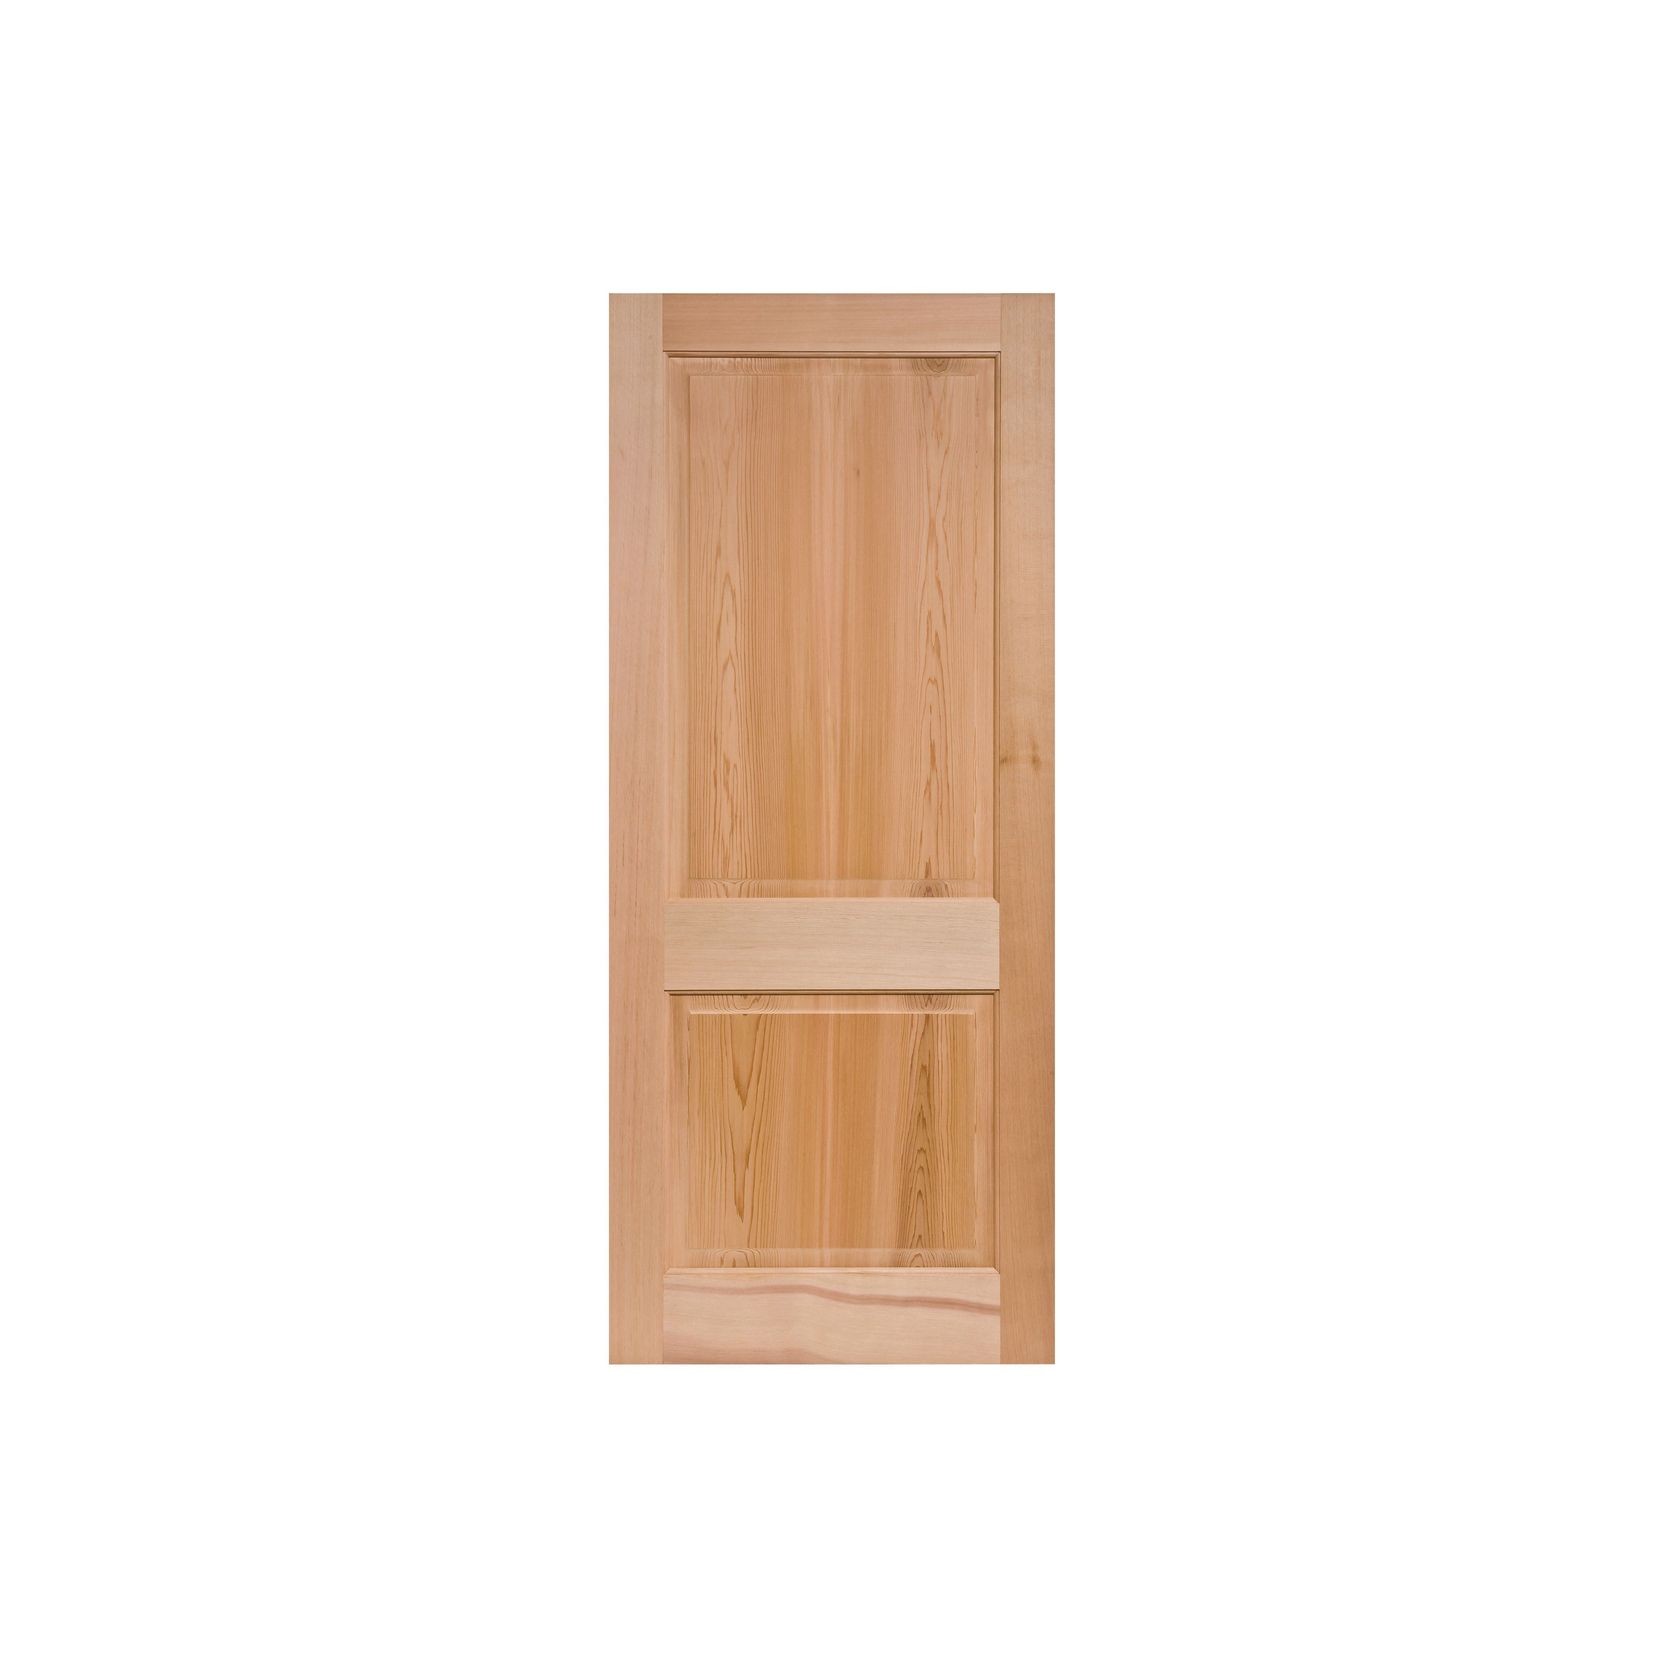 Pioneer 2 Solid Wood Door gallery detail image